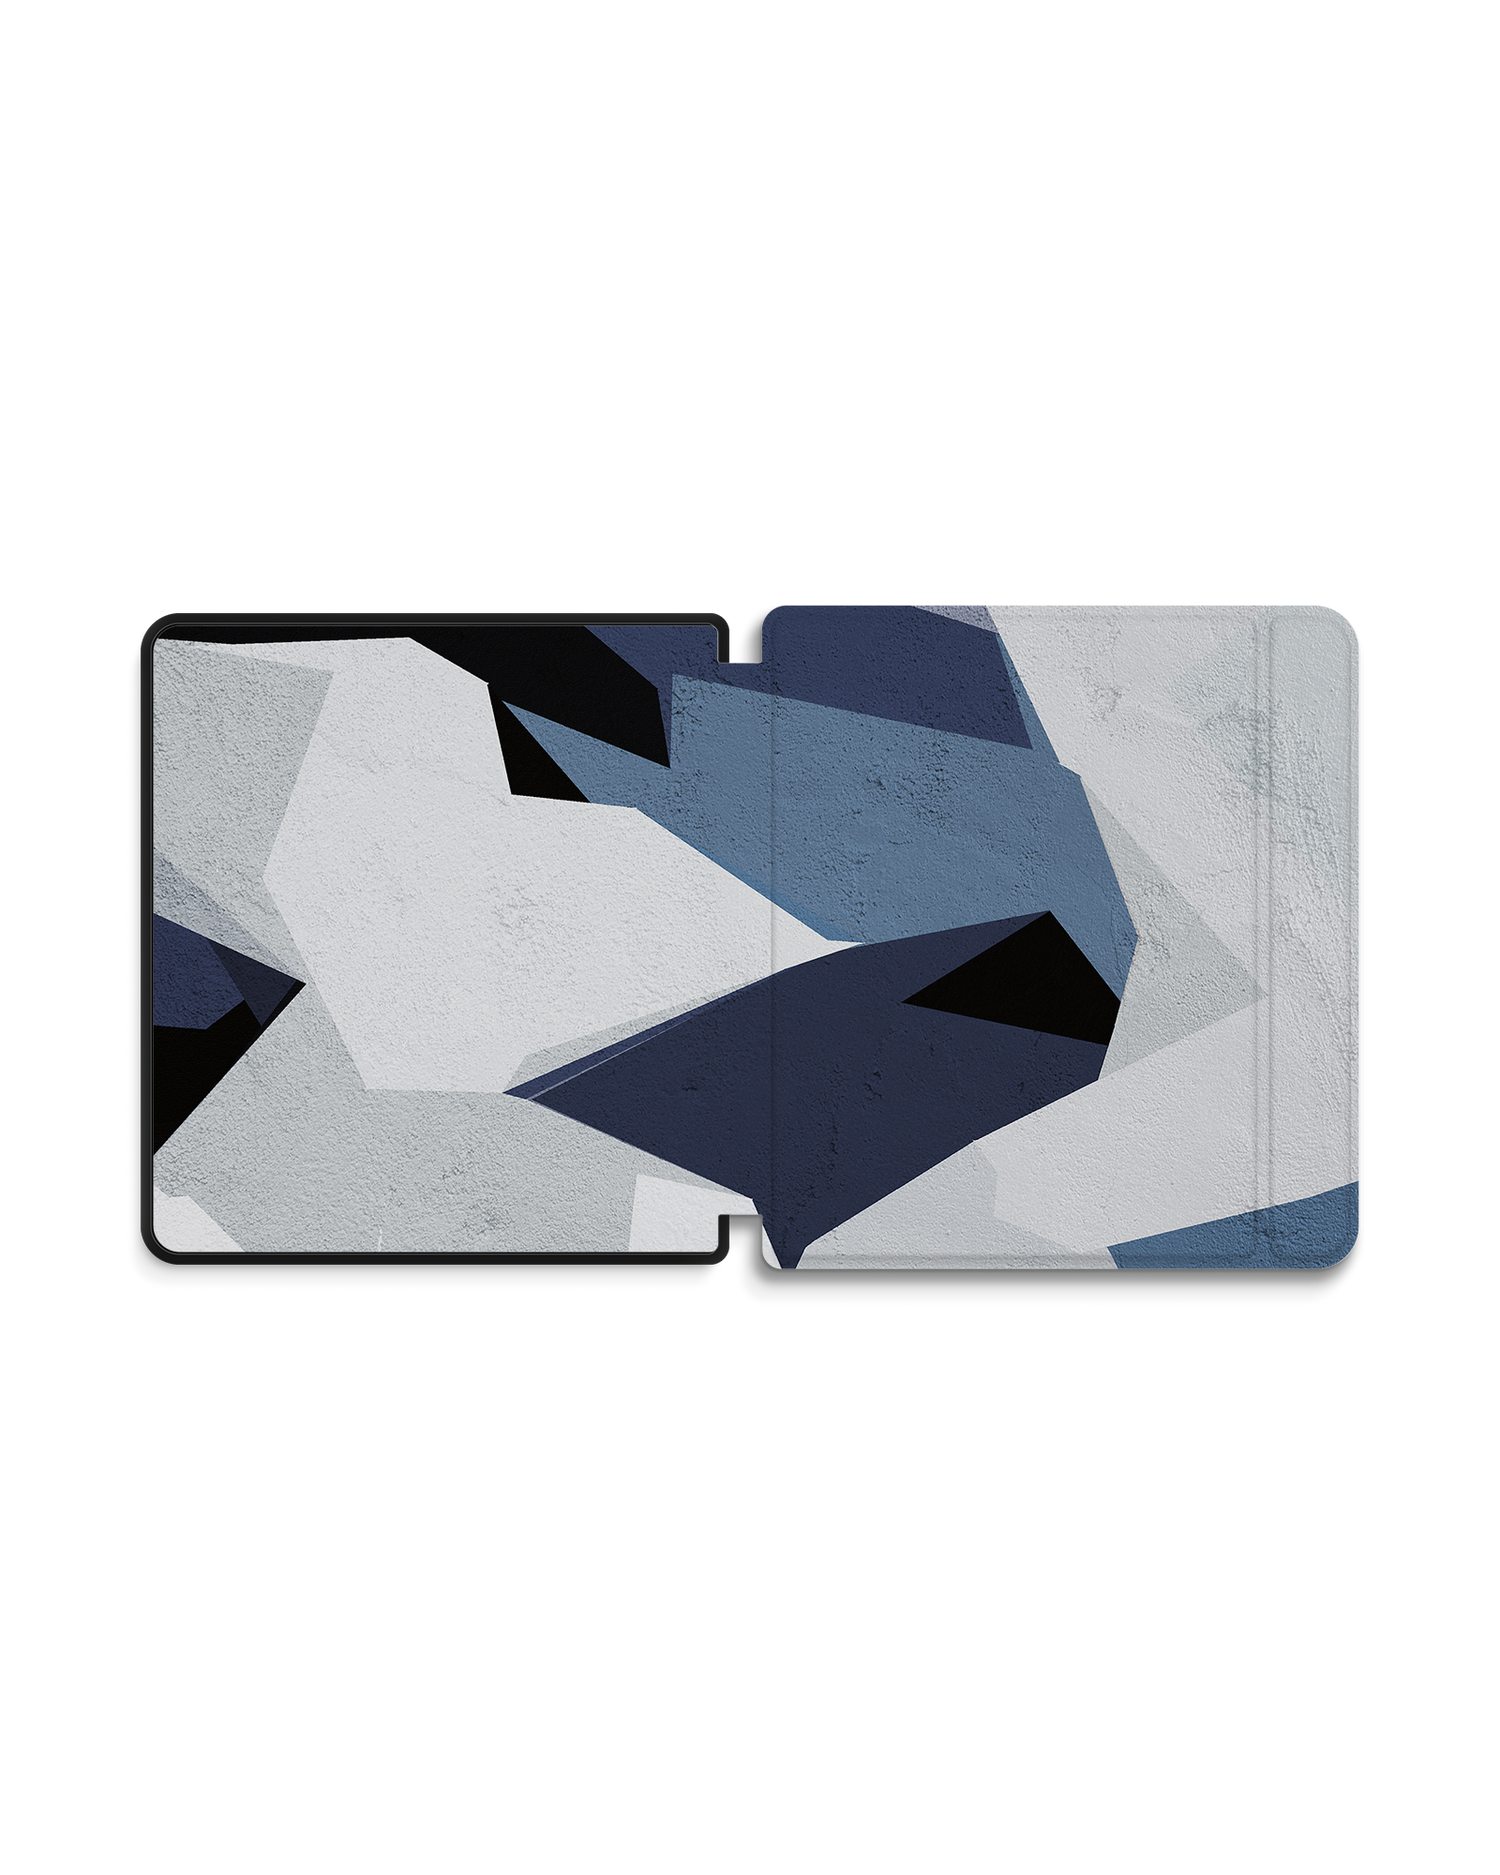 Geometric Camo Blue eBook Reader Smart Case für tolino epos 2: Geöffnet Außenansicht